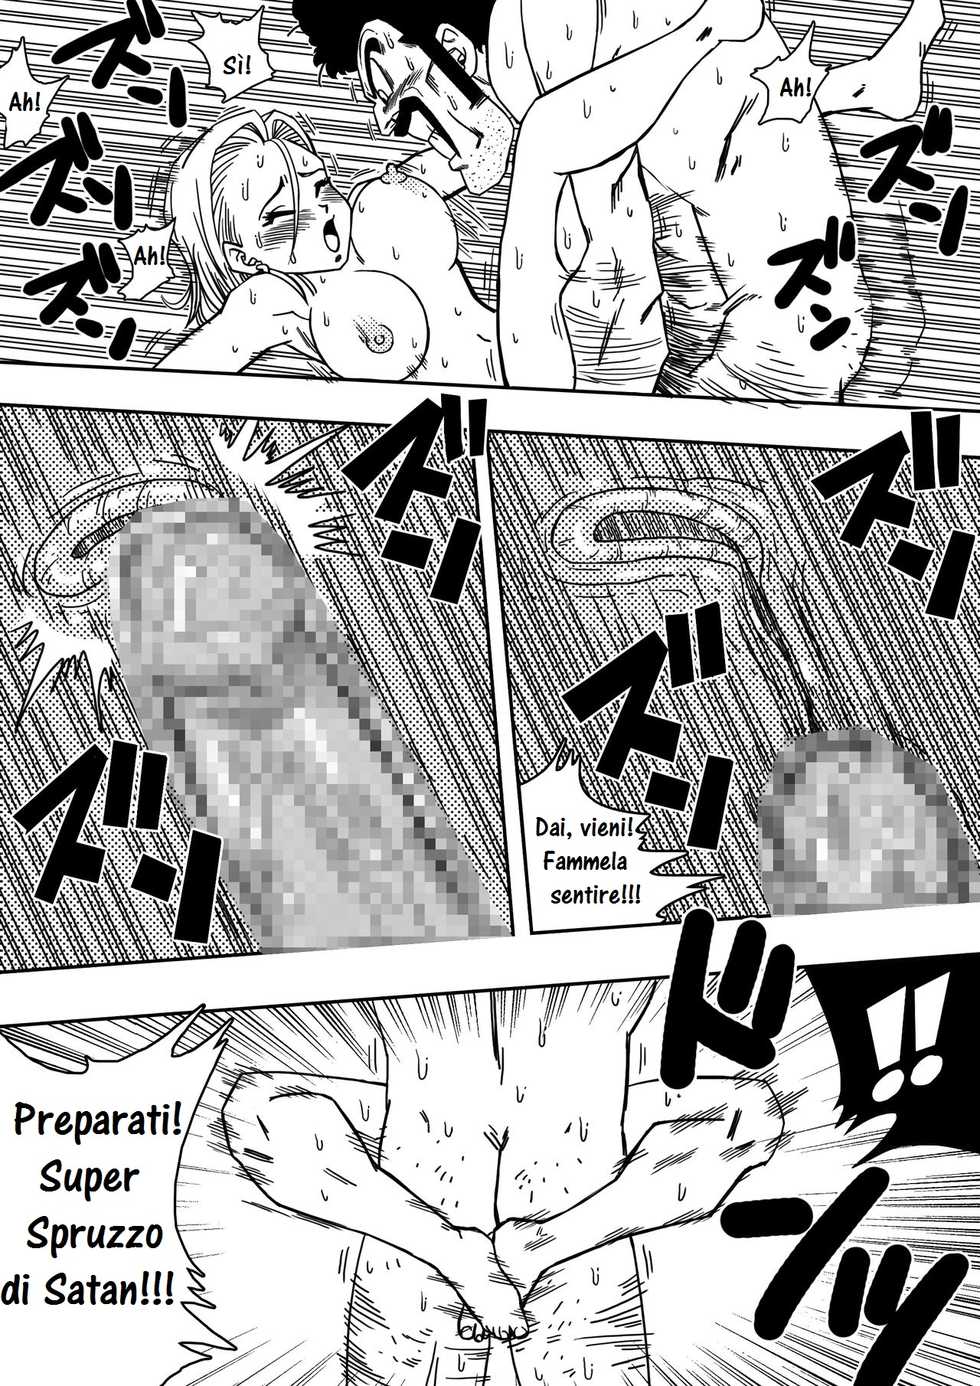 [Yamamoto] 18-gou to Mister Satan!! Seiteki Sentou! | C 18 e Mr. Satan!! Rapporti sessuali tra guerrieri!!!! (Dragon Ball Z) [Italian] - Page 12